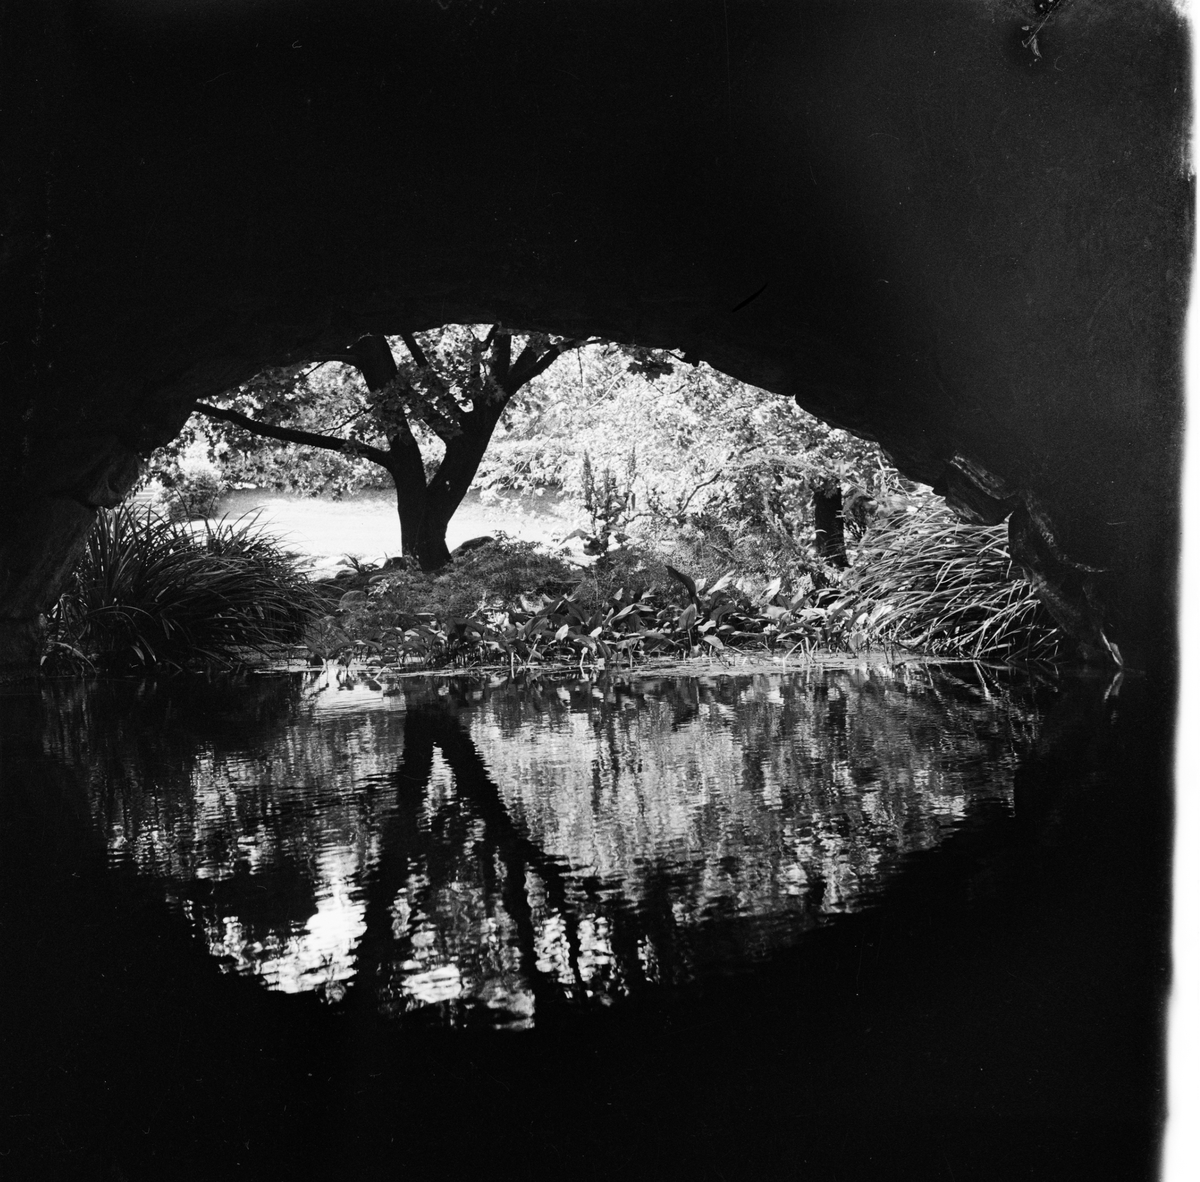 Sommar - vattendrag under en bro, Uppsala 1947